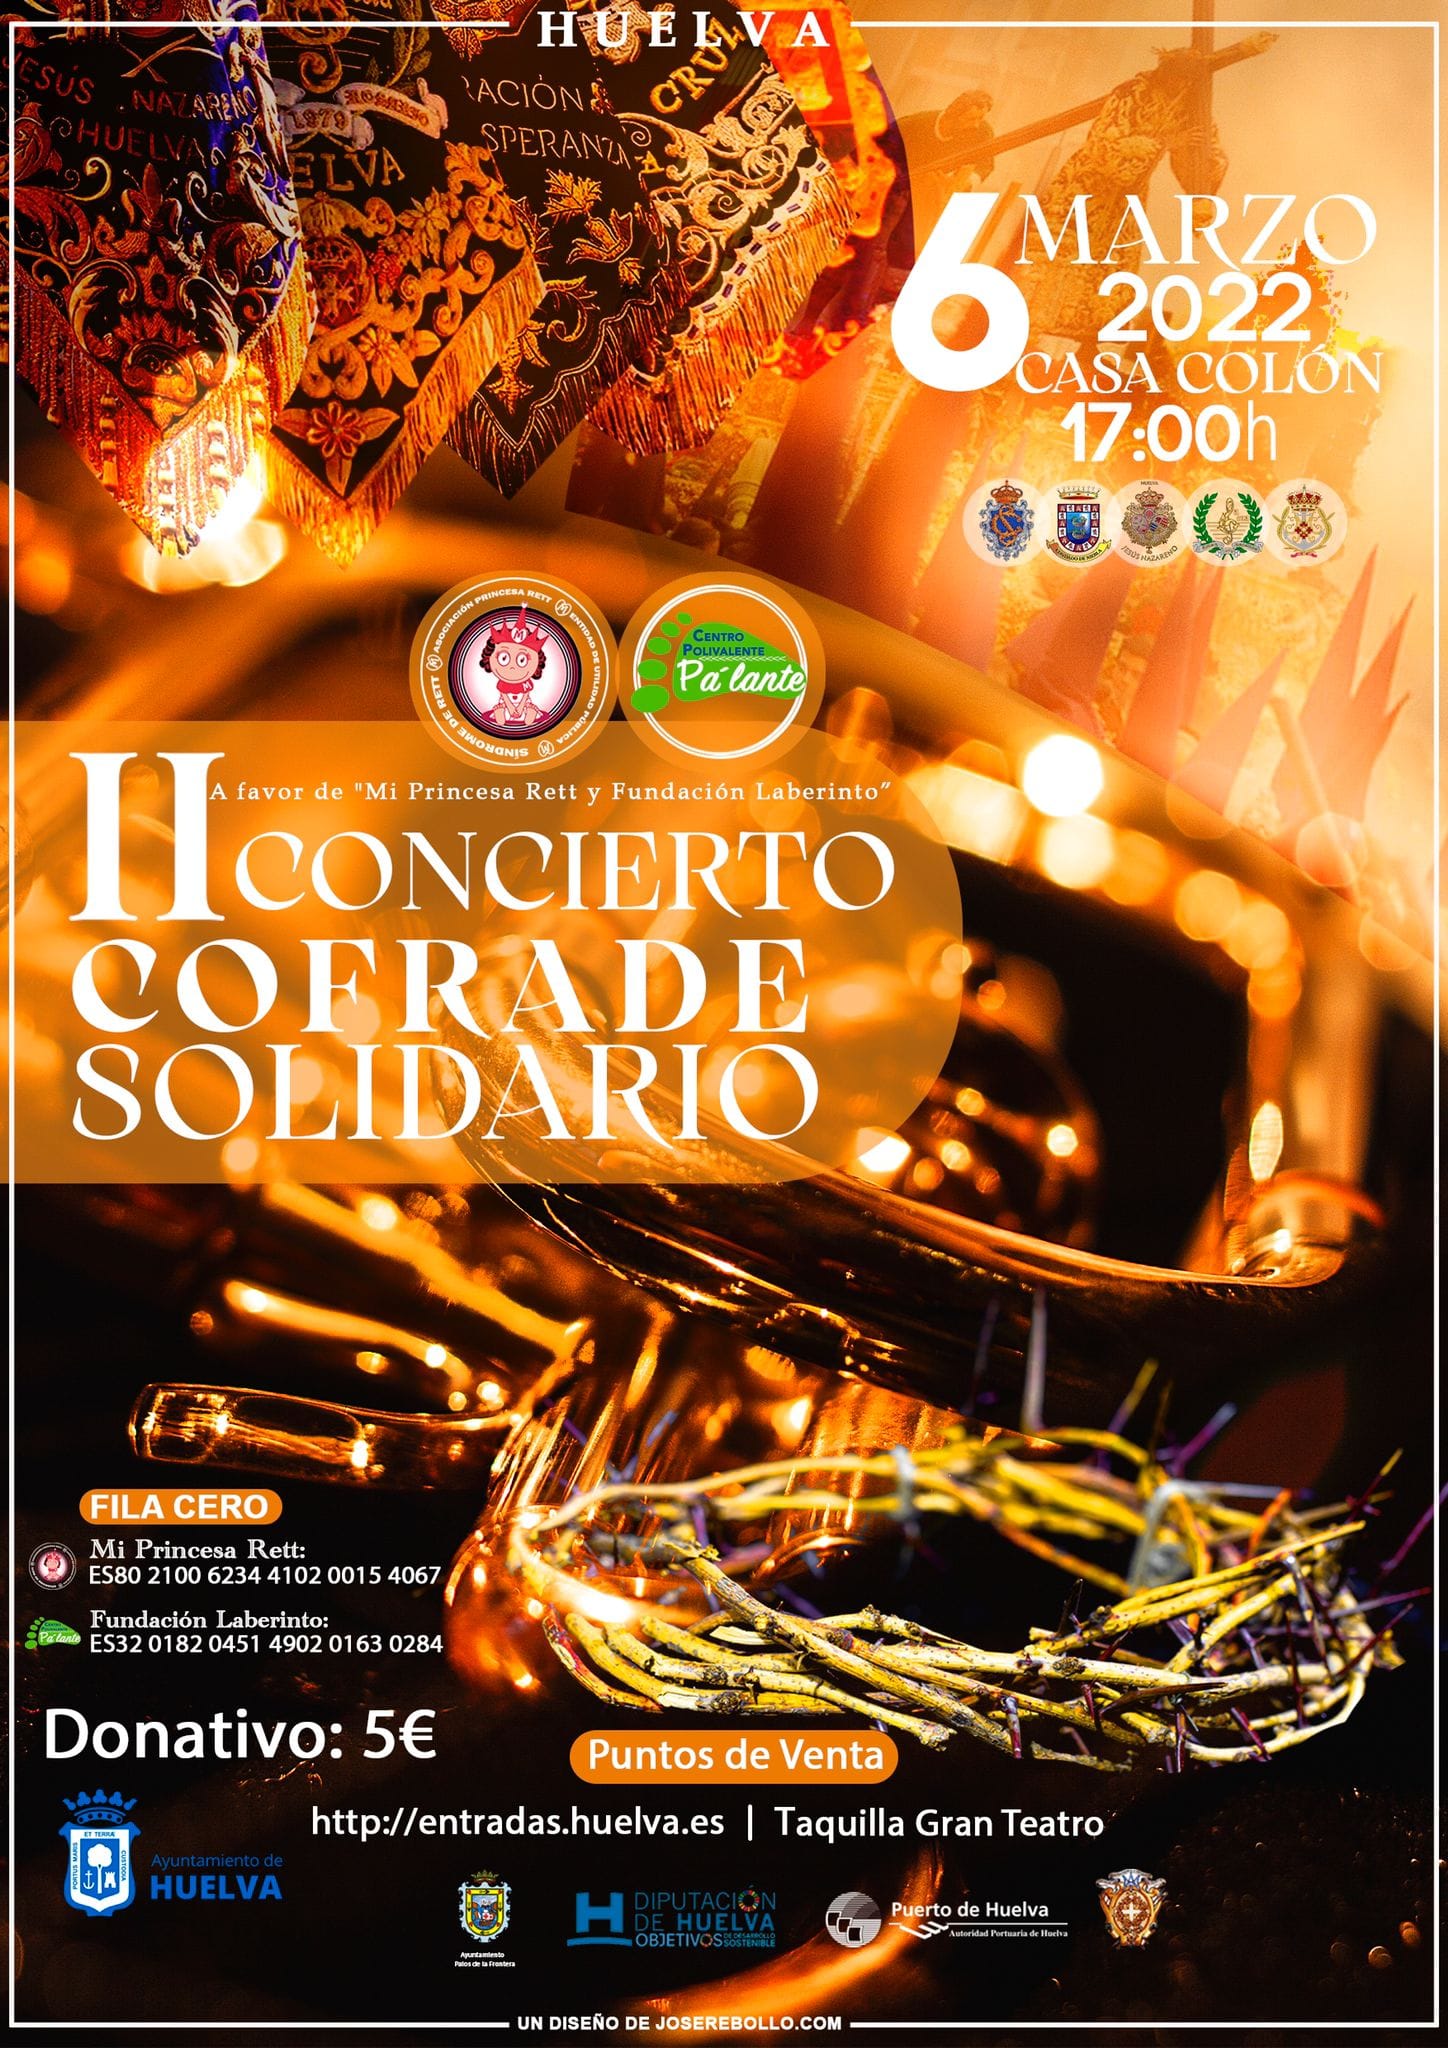 Este domingo se celebra el II Concierto Cofrade Solidario, a beneficio de mi Princesa RETT y Fundación Laberinto